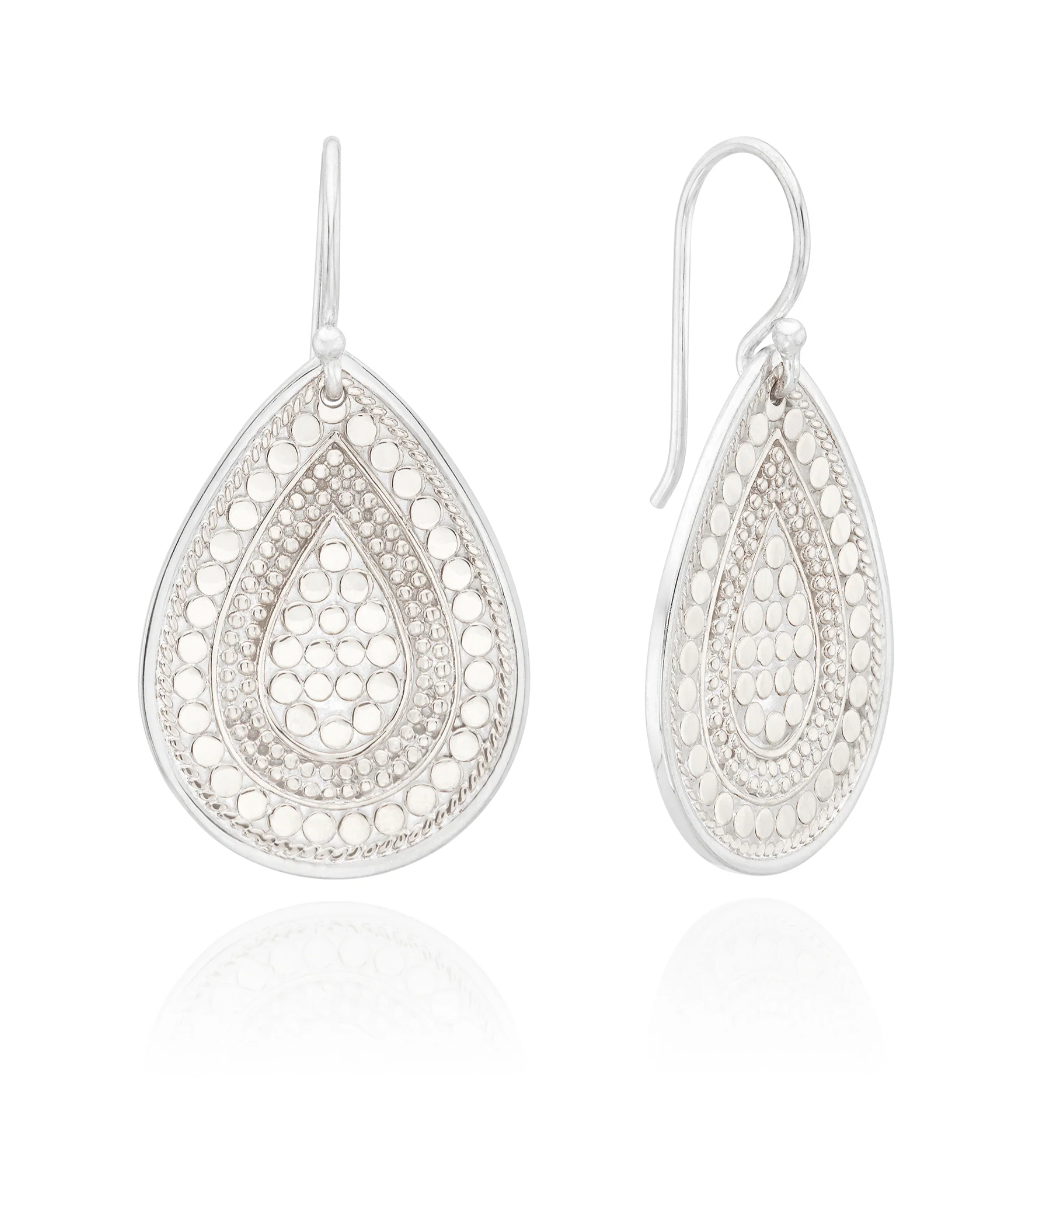 silver teardrop earrings